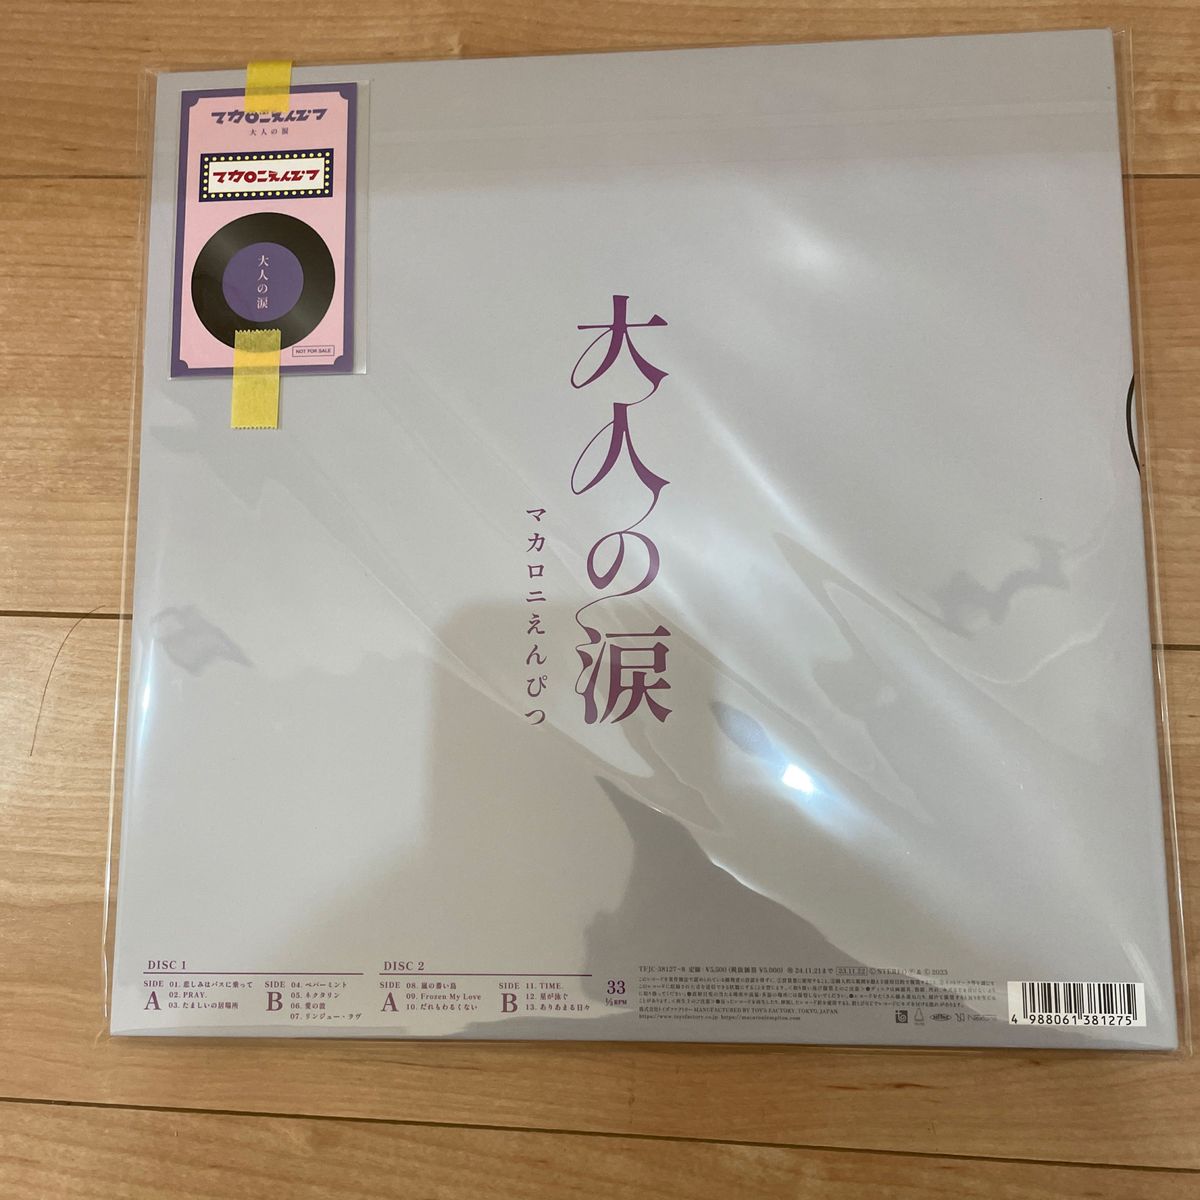 特別オファー マカロニえんぴつ 大人の涙 アナログ盤 2枚組レコード 